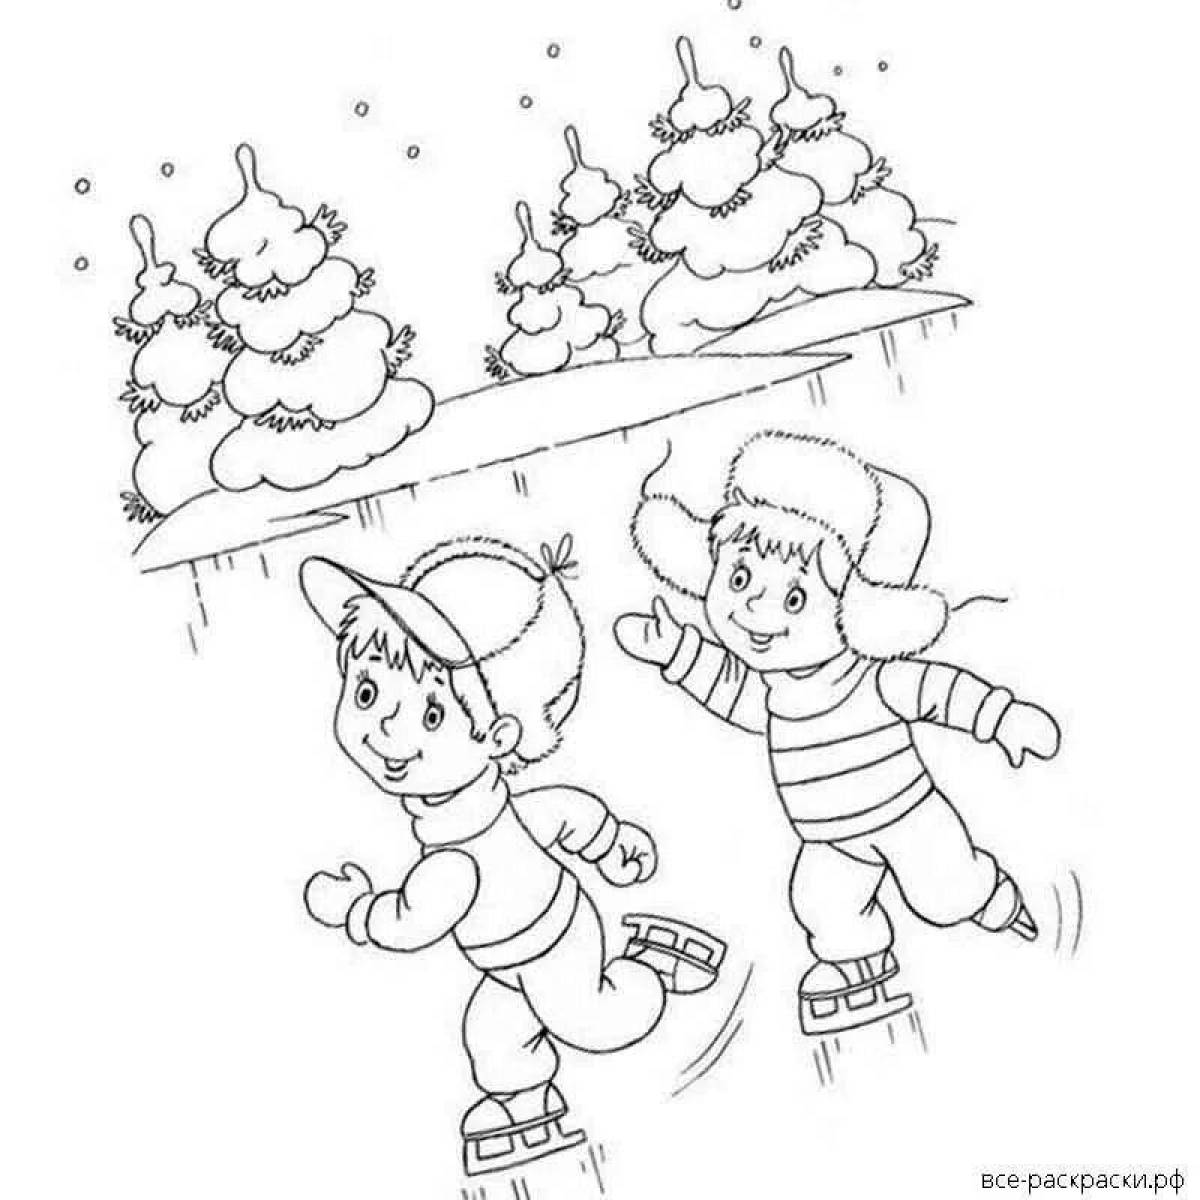 Восторженные дети, играющие зимой